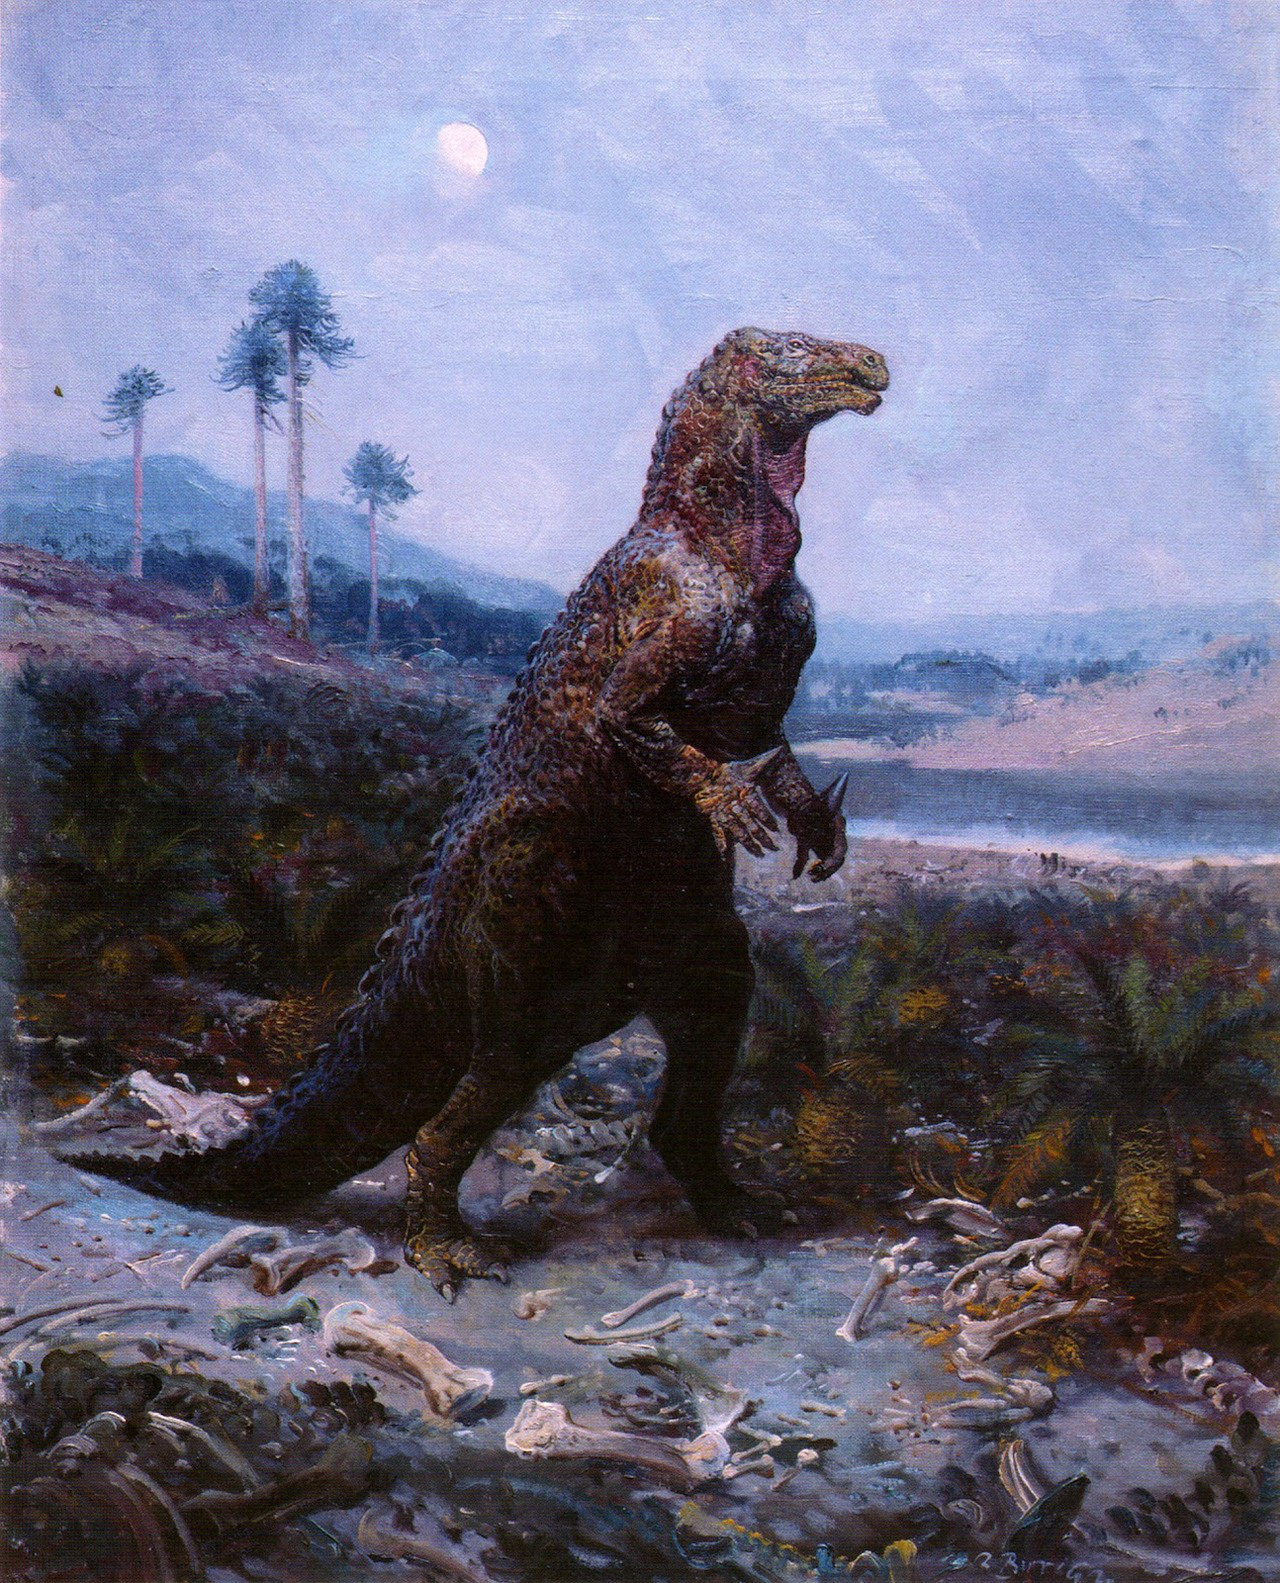 OpÄ›t ornitopod Iguanodon bernissartensis, tentokrĂˇt v podstatnÄ› starĹˇĂ­m provedenĂ­ geniĂˇlnĂ­ho malĂ­Ĺ™e ZdeĹ?ka Buriana. O mnoho desetiletĂ­ dĹ™Ă­ve AntonĂ­n FriÄŤ (kterĂ˝ zemĹ™el, kdyĹľ bylo umÄ›lci ze Ĺ tramberka teprve osm let) vÄ›Ĺ™il, Ĺľe 